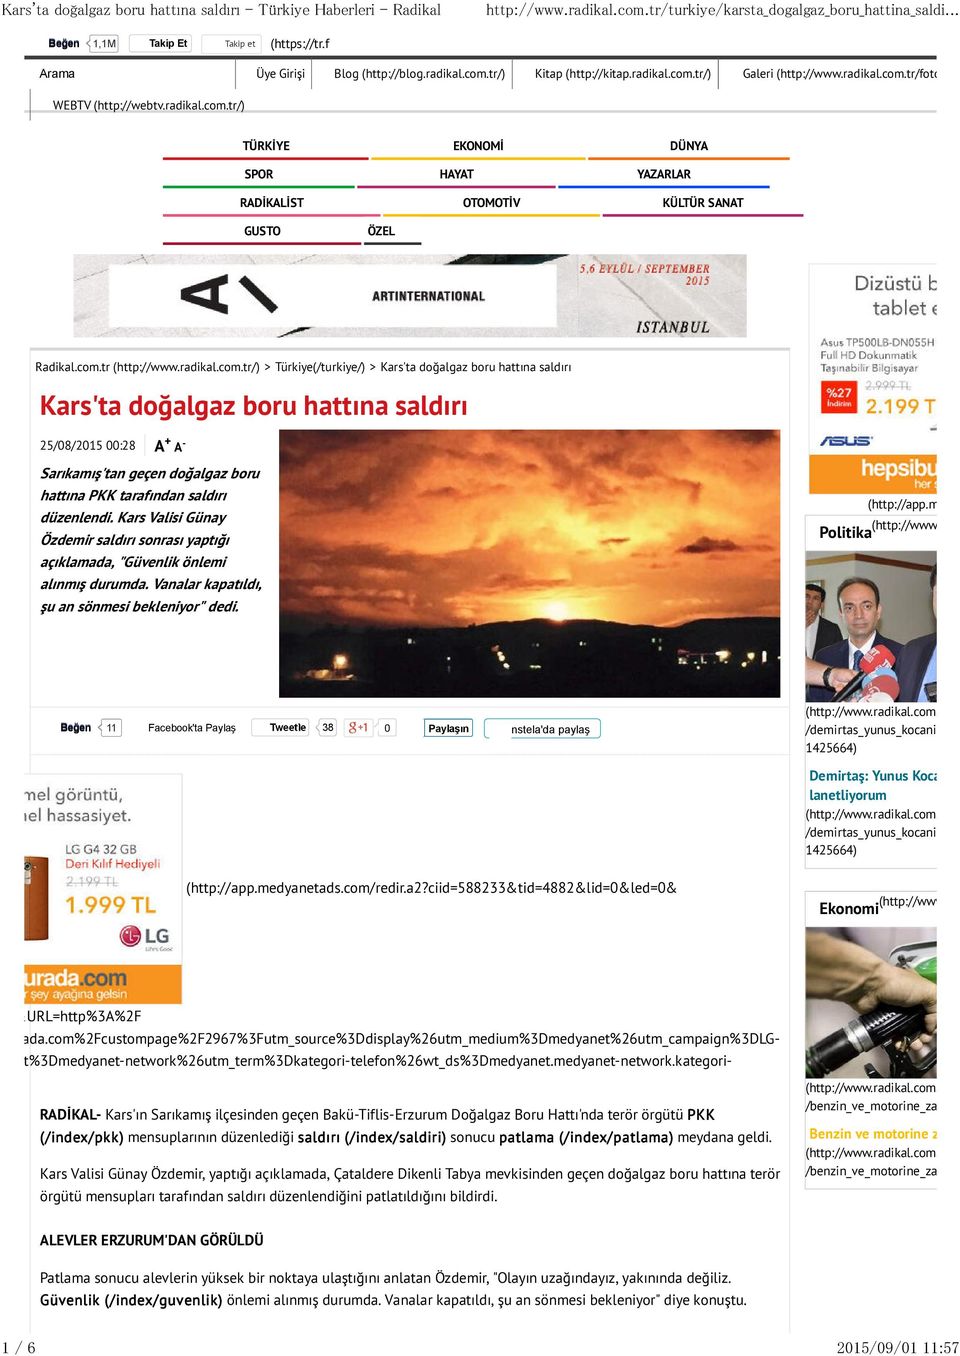 com.tr /) > Türkiye(/turkiye/) > Kars'ta doğalgaz boru hattına saldırı Kars'ta doğalgaz boru hattına saldırı 25/08/2015 00:28 + A A - Sarıkamış'tan geçen doğalgaz boru hattına PKK tarafından saldırı